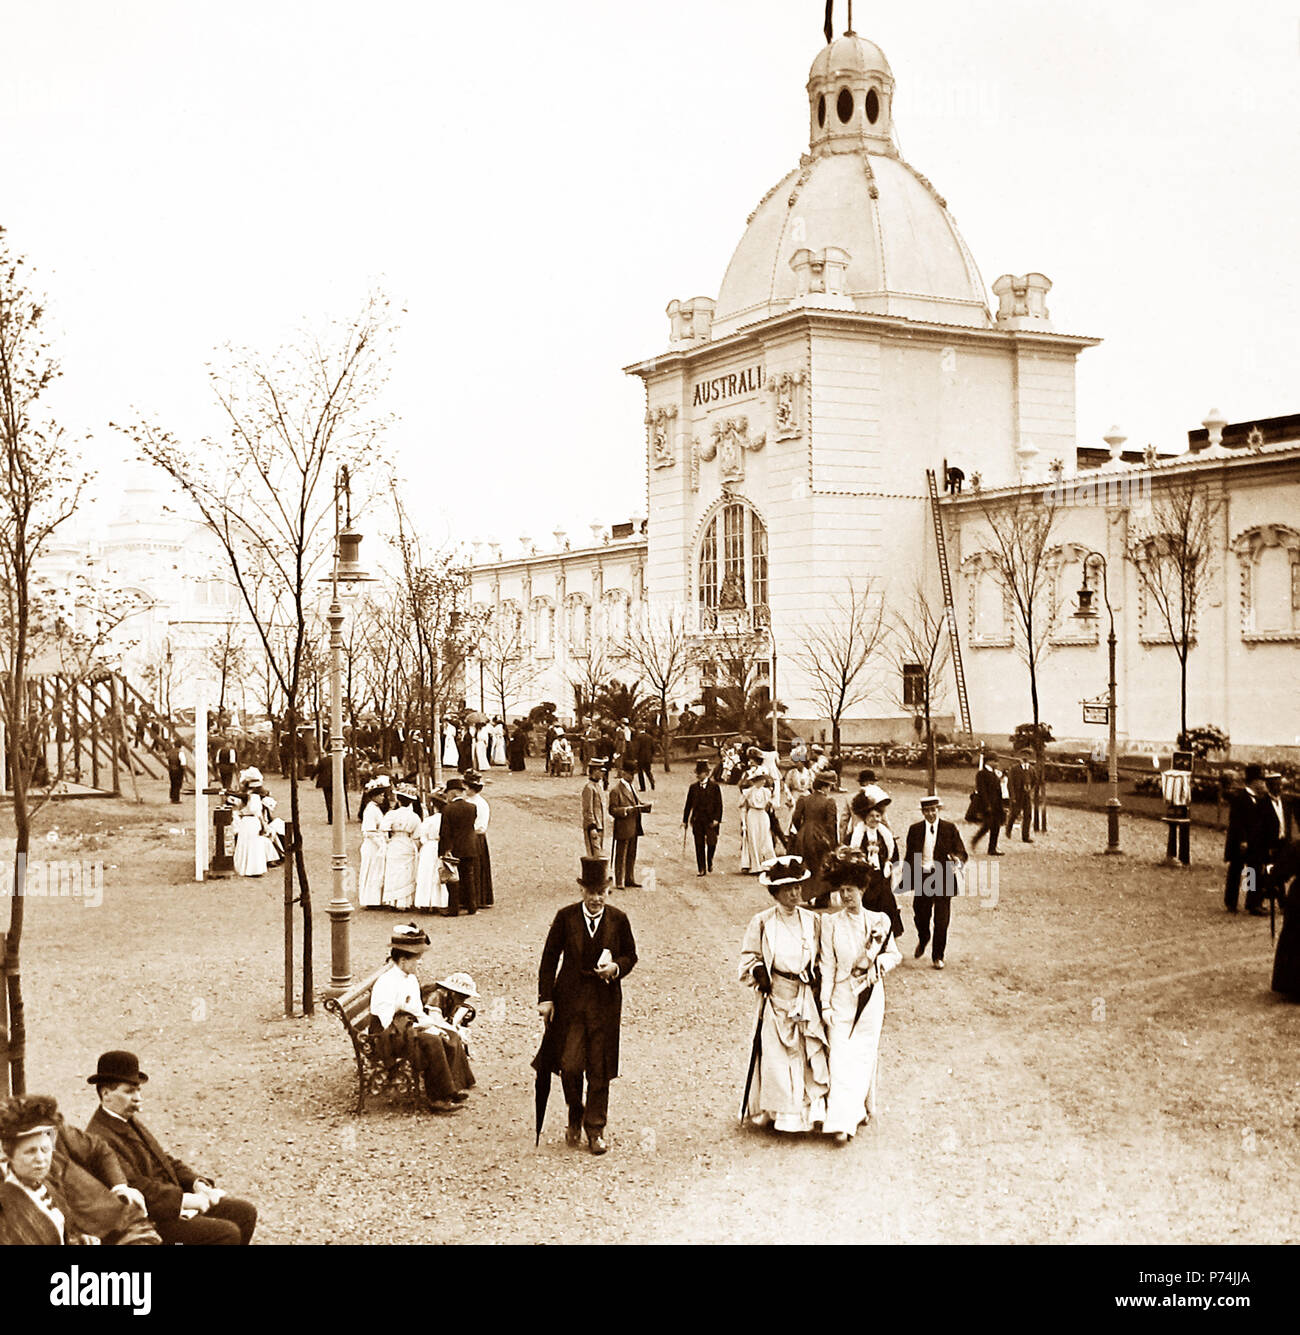 Le Palais de l'Australie, l'exposition franco-britannique à White City, Londres, en 1908 Banque D'Images